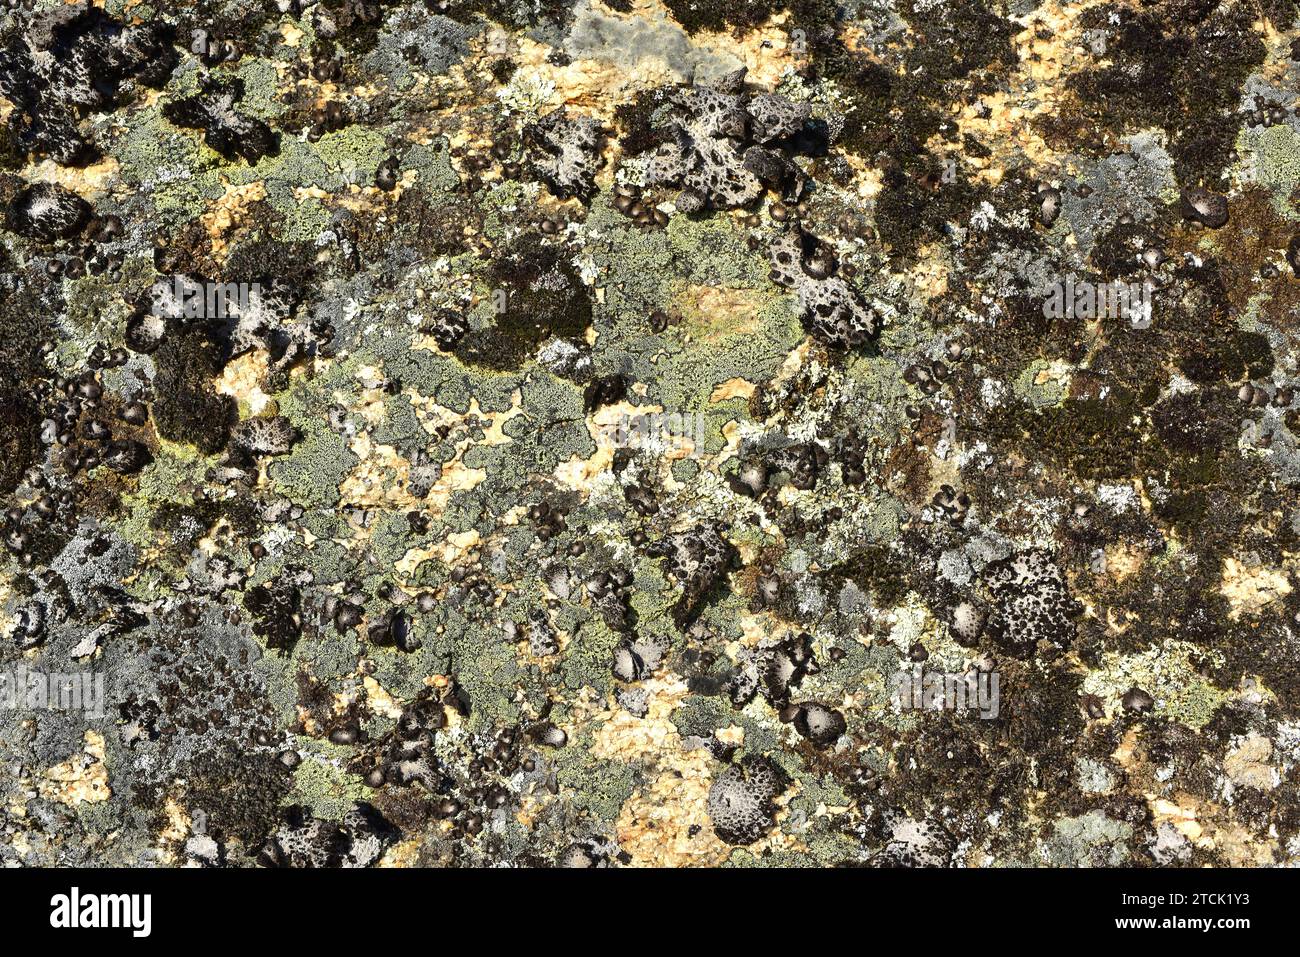 Lichen community dominated by map lichen (Rhizocarpon geographicum) (yellow crustose lichen) and Umbilicaria pustulata  (foliose lichen) on a granitic Stock Photo